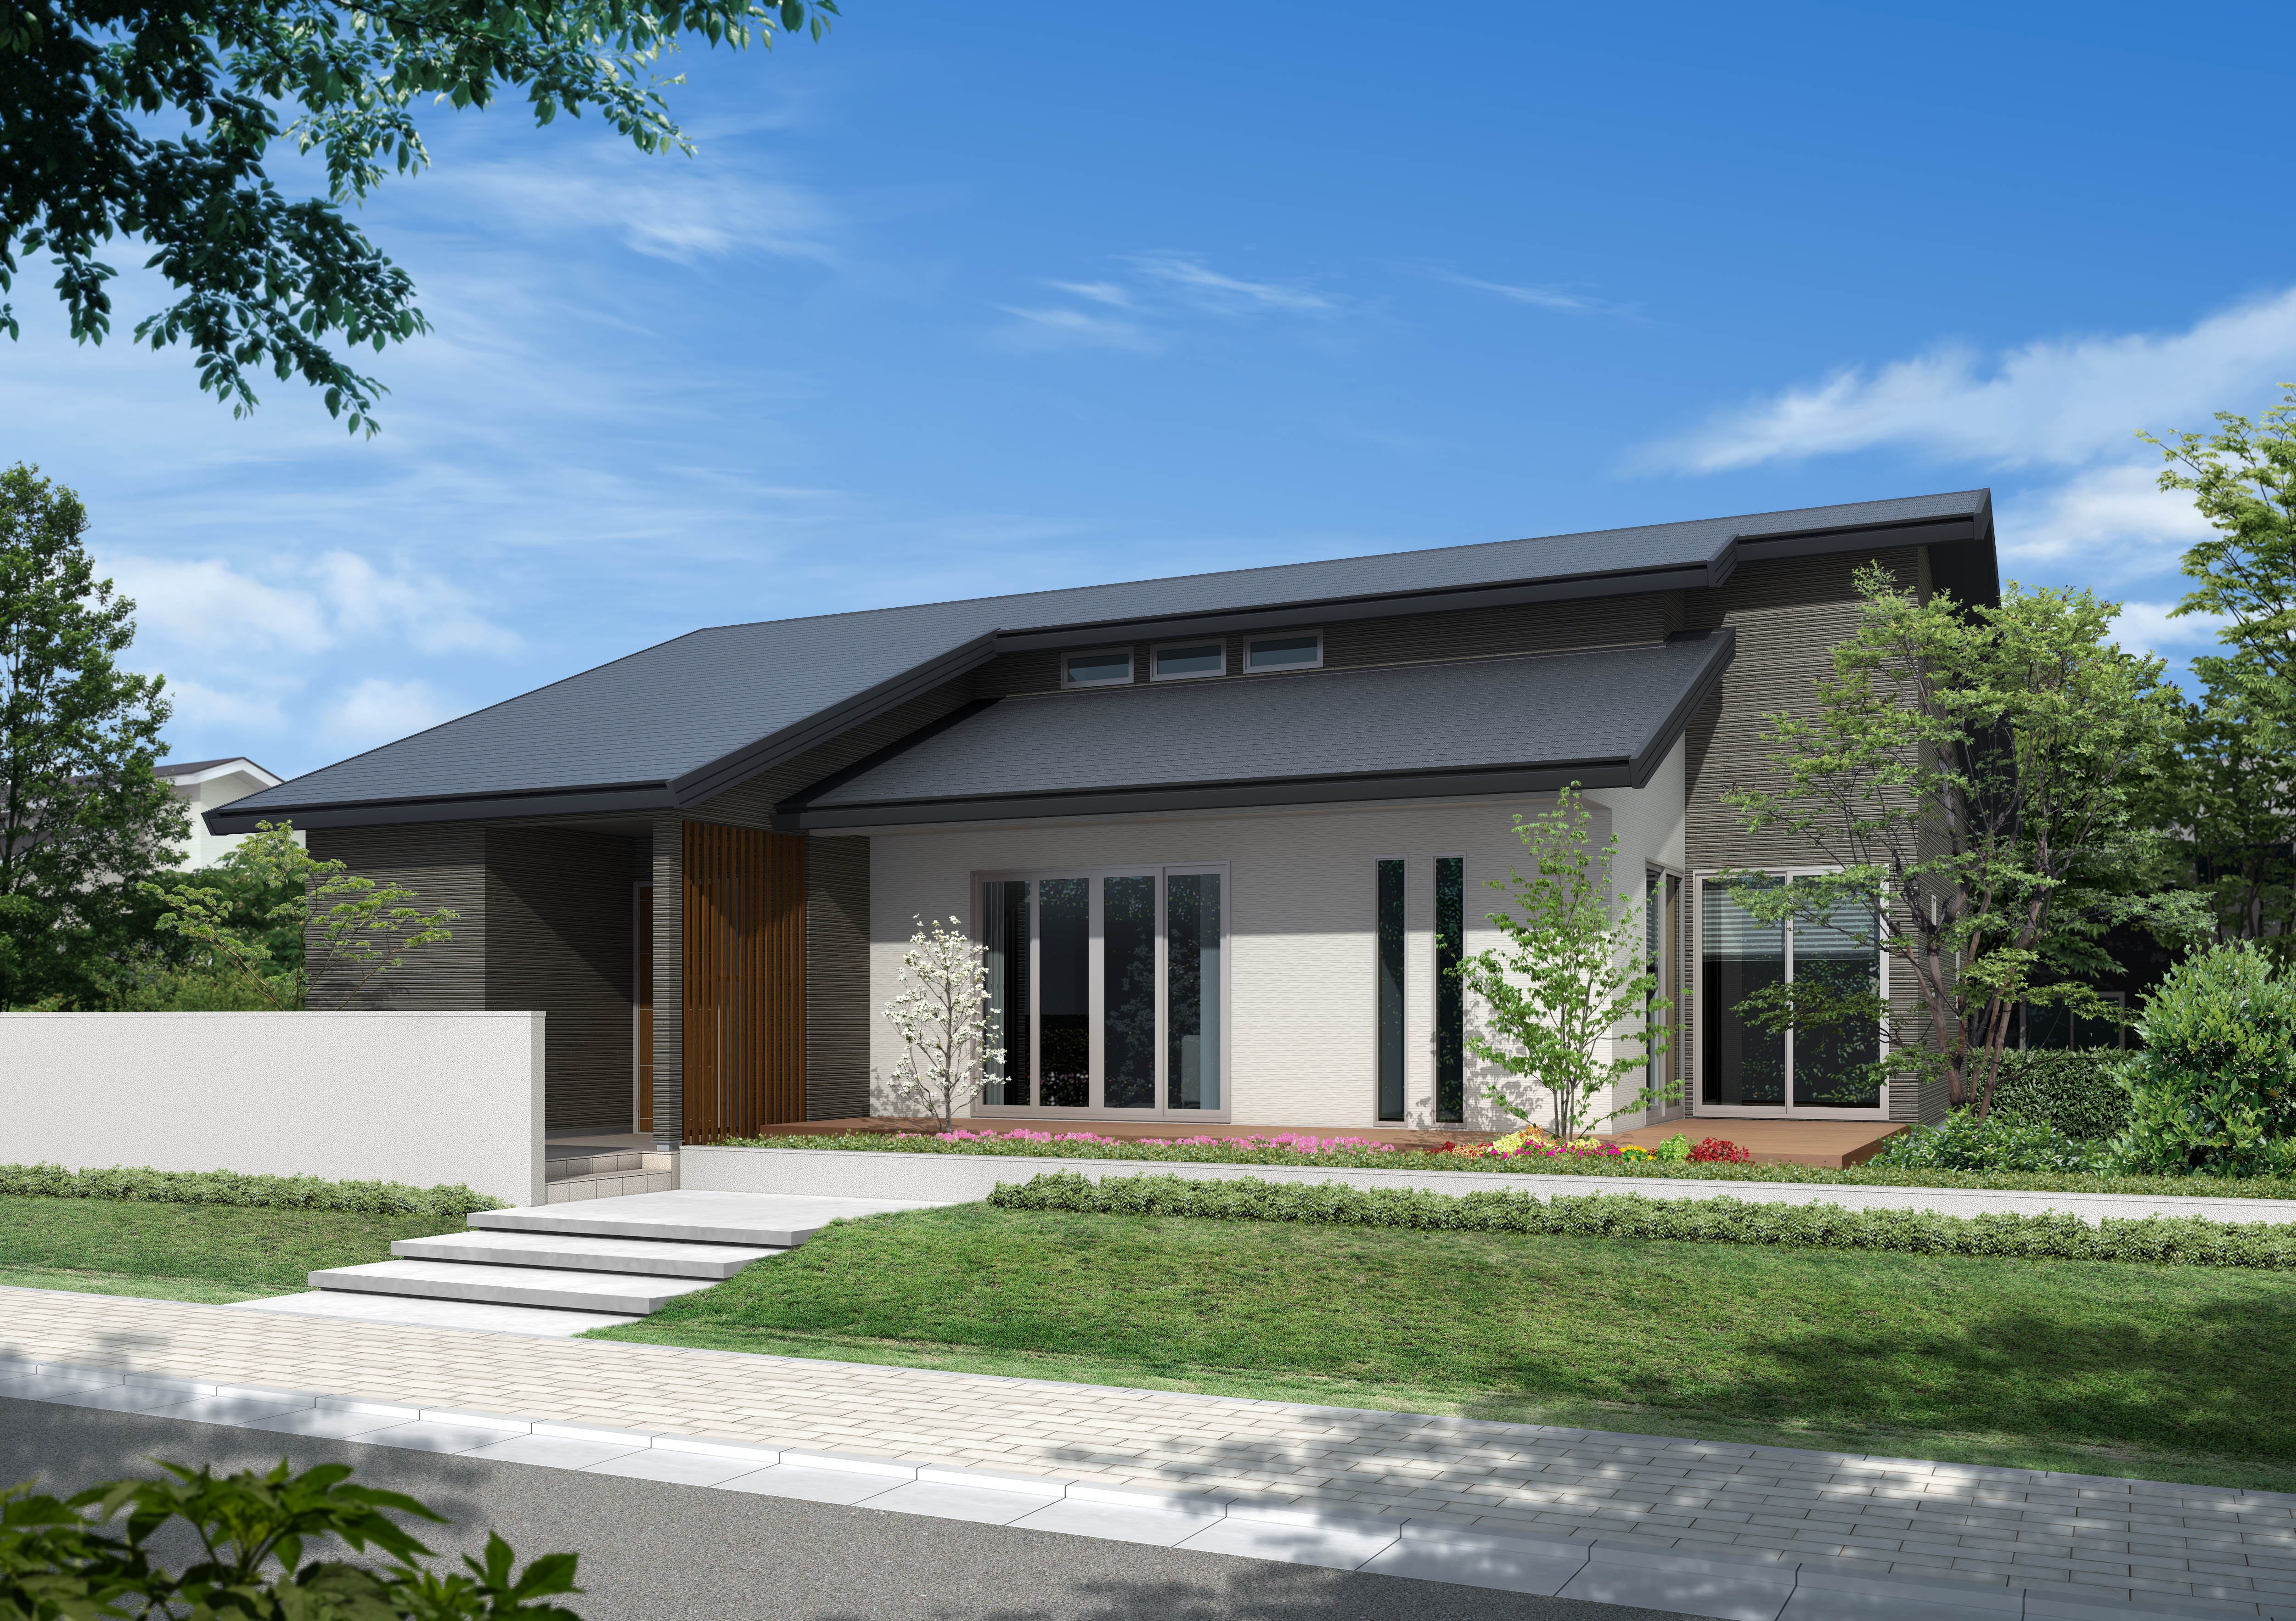 次回モデルハウスは宇佐市四日市に建設予定です